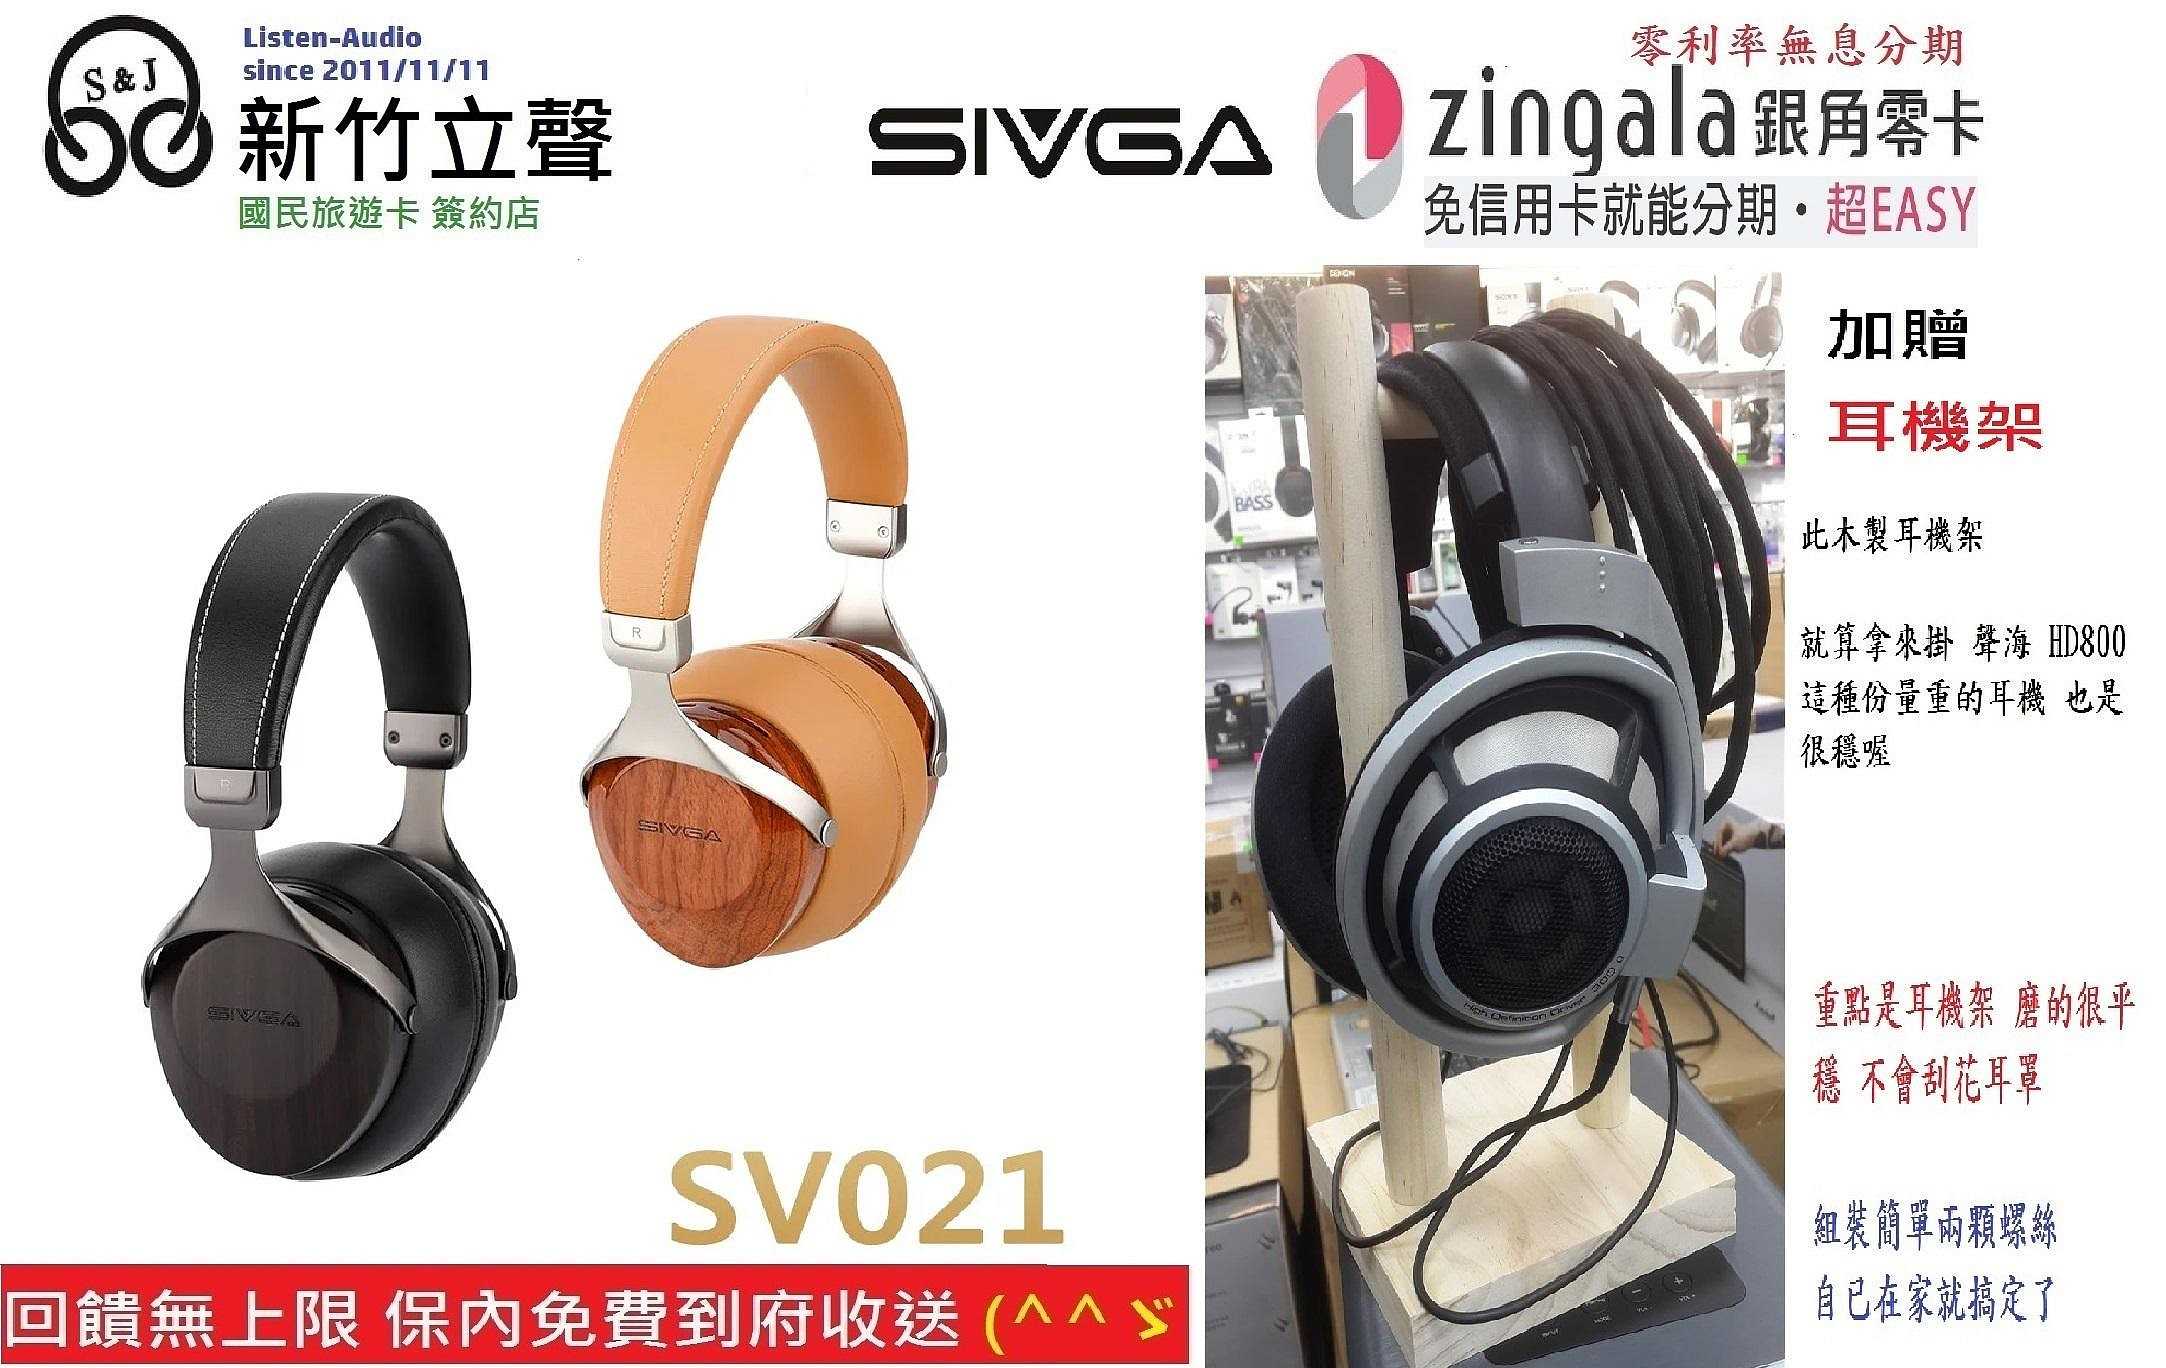 新竹立聲 | SIVGA SV021 HiFi 動圈型耳罩式耳機 HowHear 代理 加贈耳機架